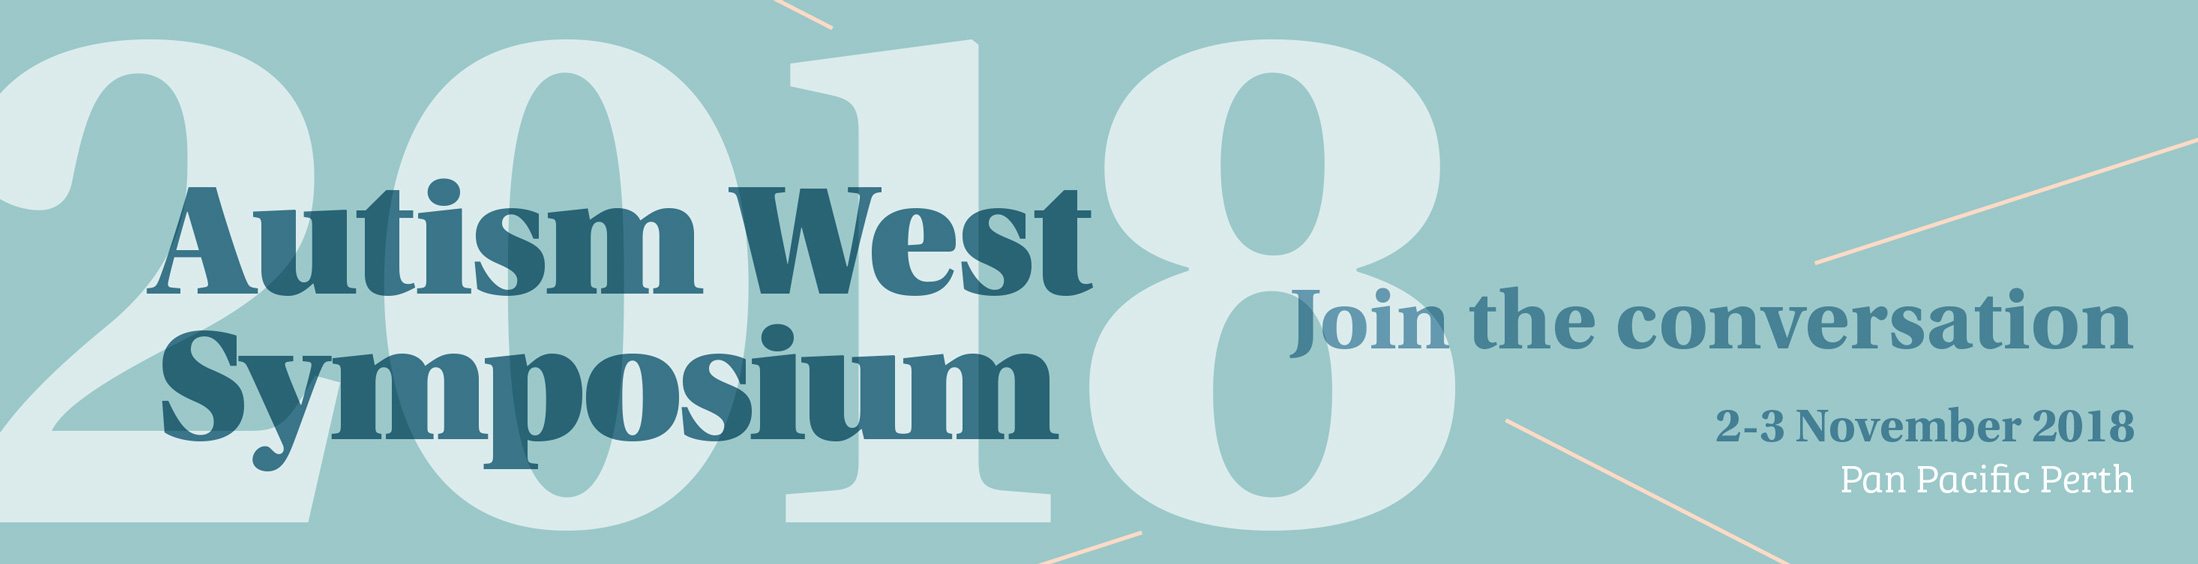 2018 Autism West Symposium Banner